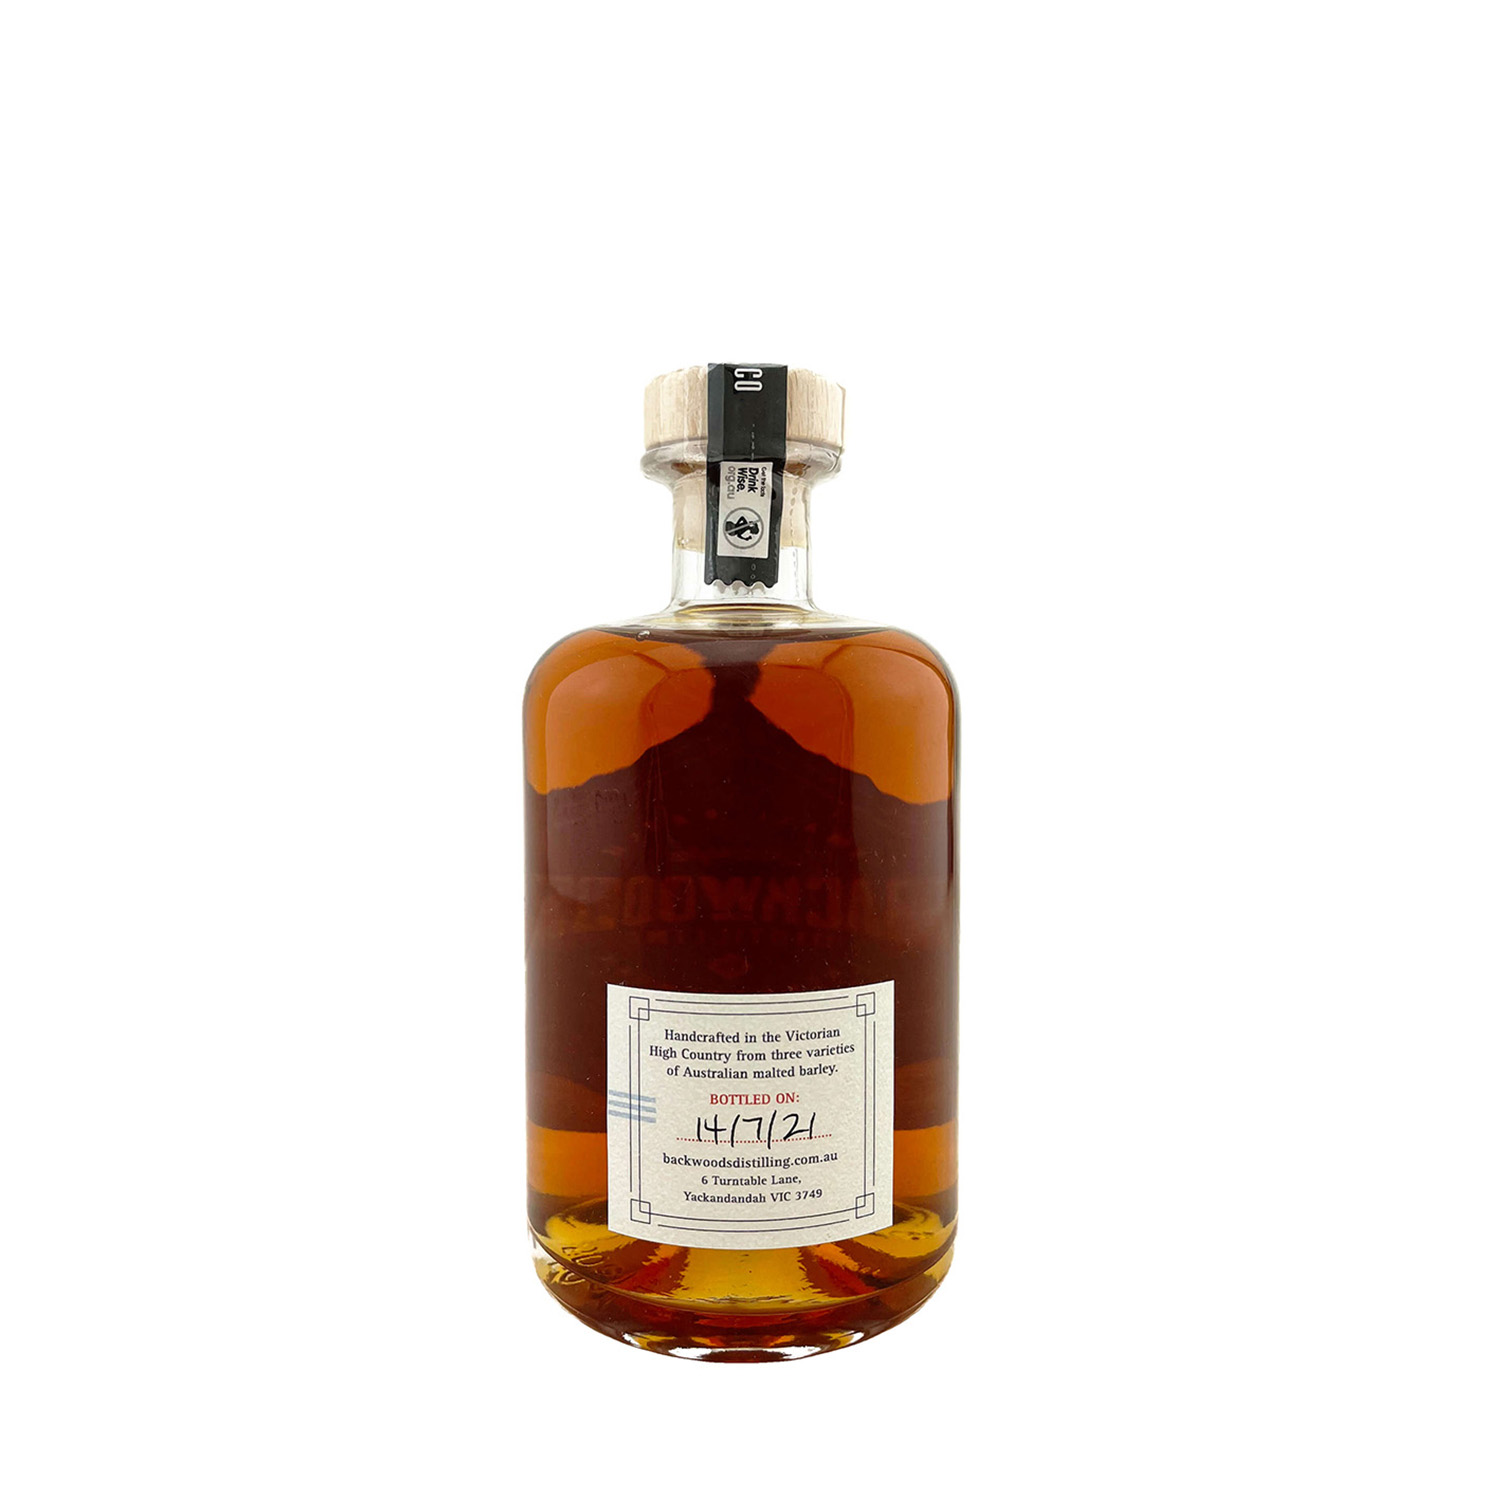 Backwoods Distilling Co. ‘Distillers Cask Series’ Single Malt Whisky ...